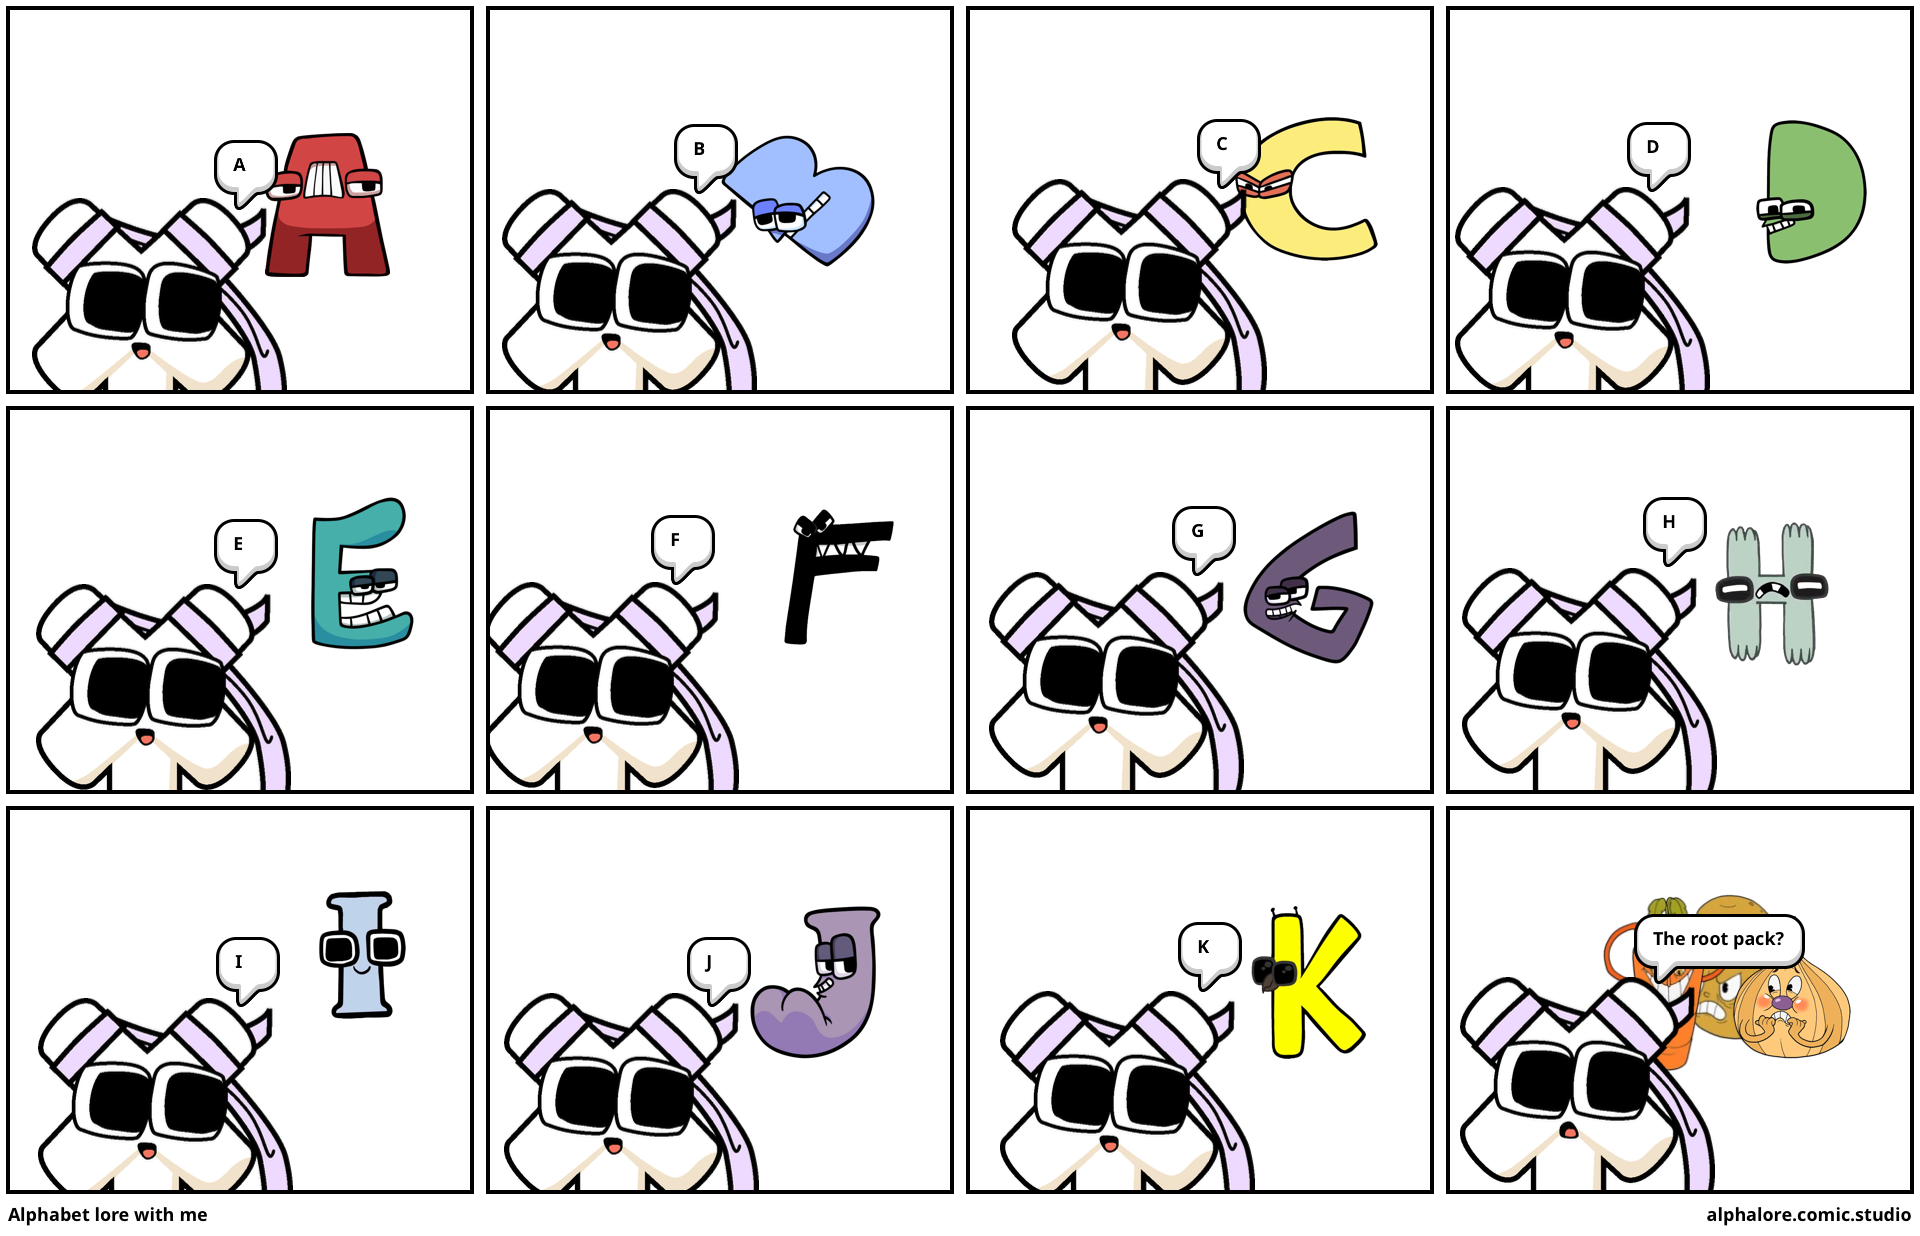 N, Alphabet Lore - Alphabet Lore - Sticker